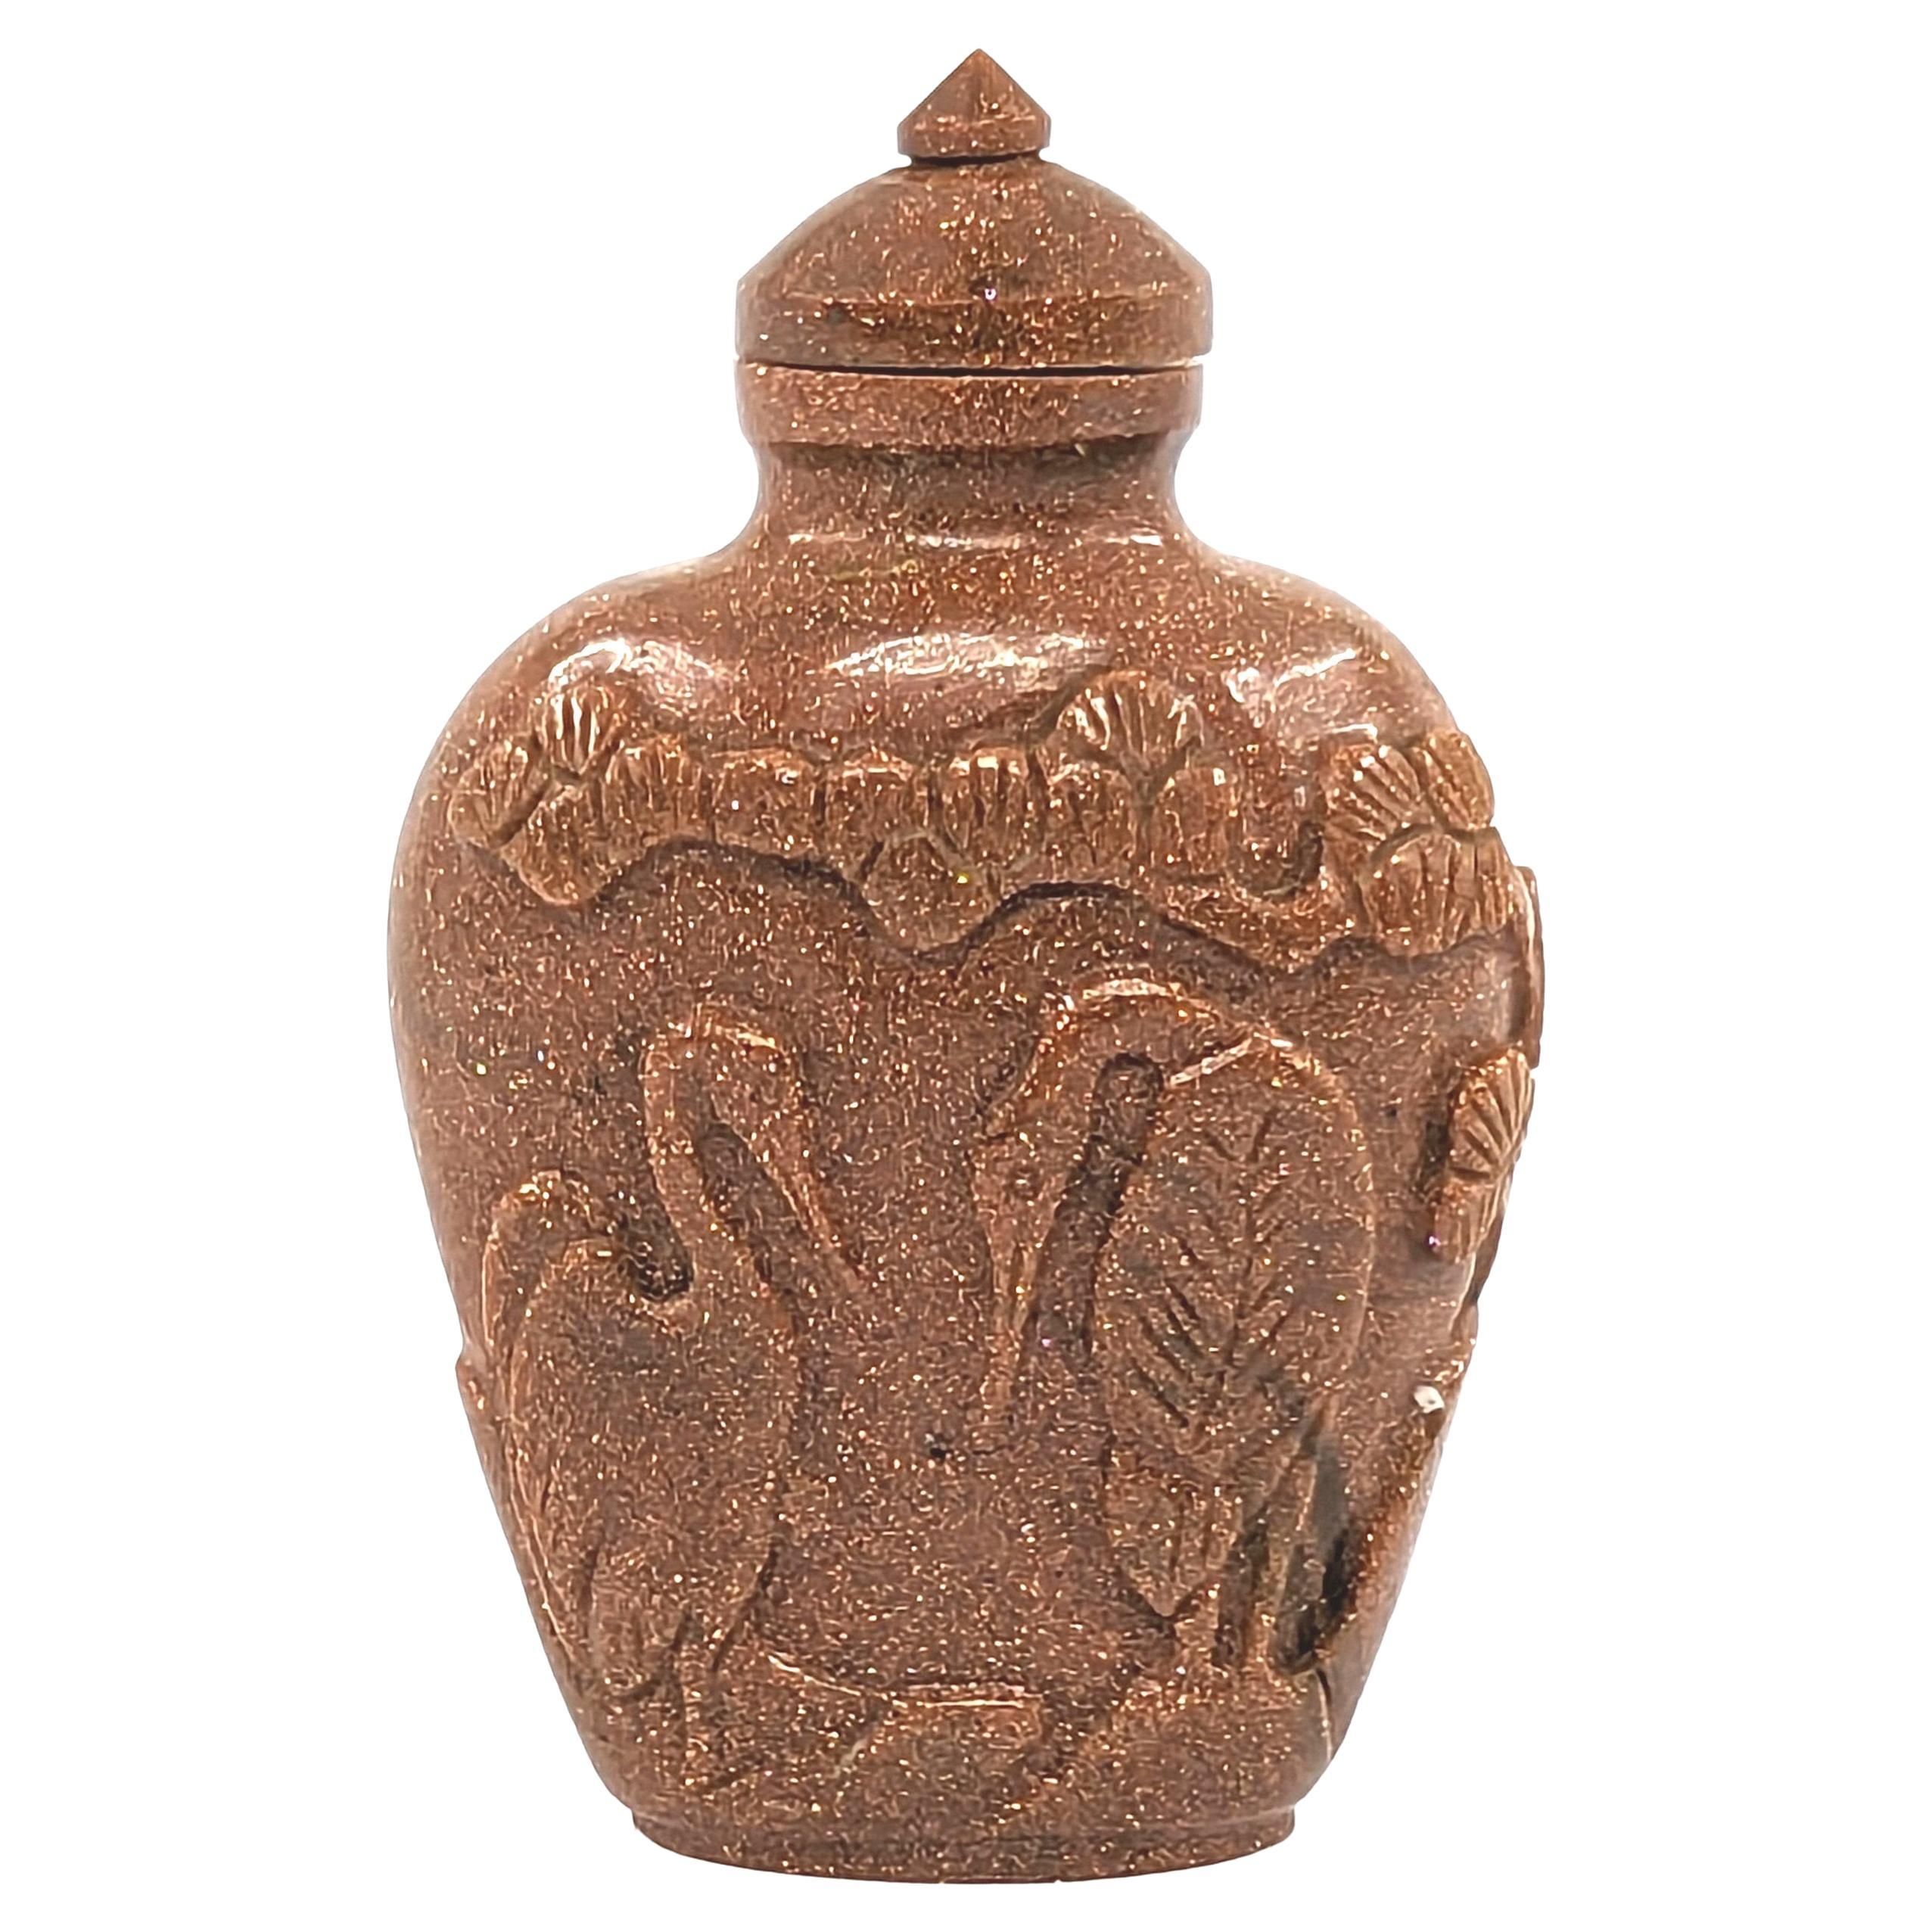 Entdecken Sie diese seltene und exquisite Schnupftabakflasche aus schimmerndem Goldstein aus der Zeit der Republik China (1910-1940), die die raffinierte Handwerkskunst dieser Epoche repräsentiert. Der aus dem unverwechselbaren Goldstein gefertigte